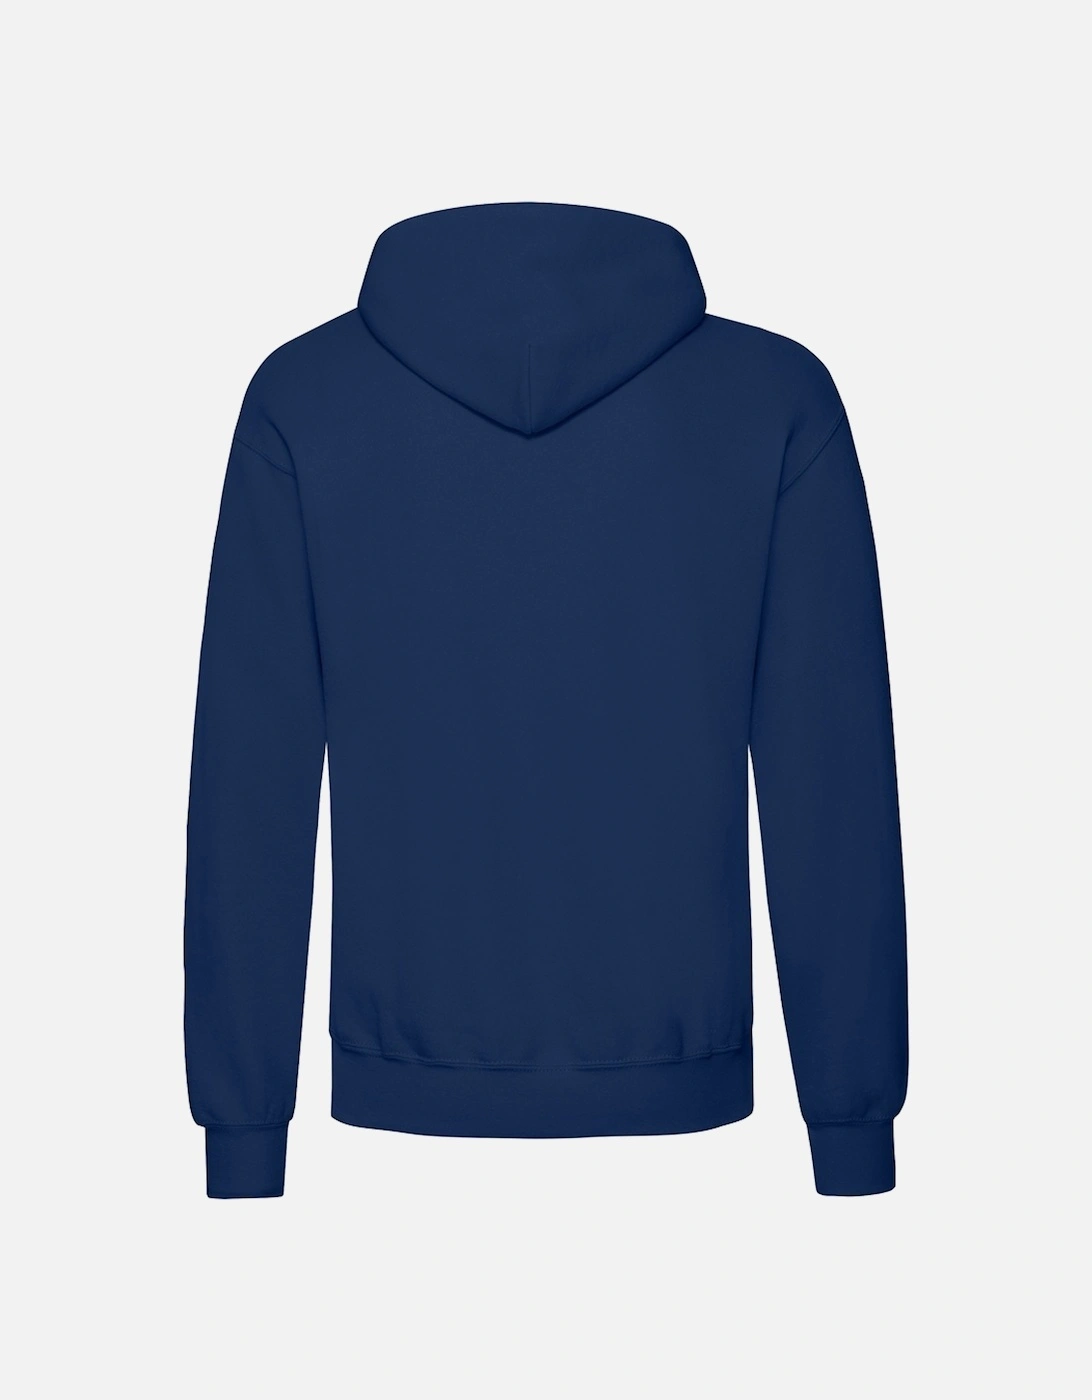 Adults Unisex Classic Hooded Sweatshirt